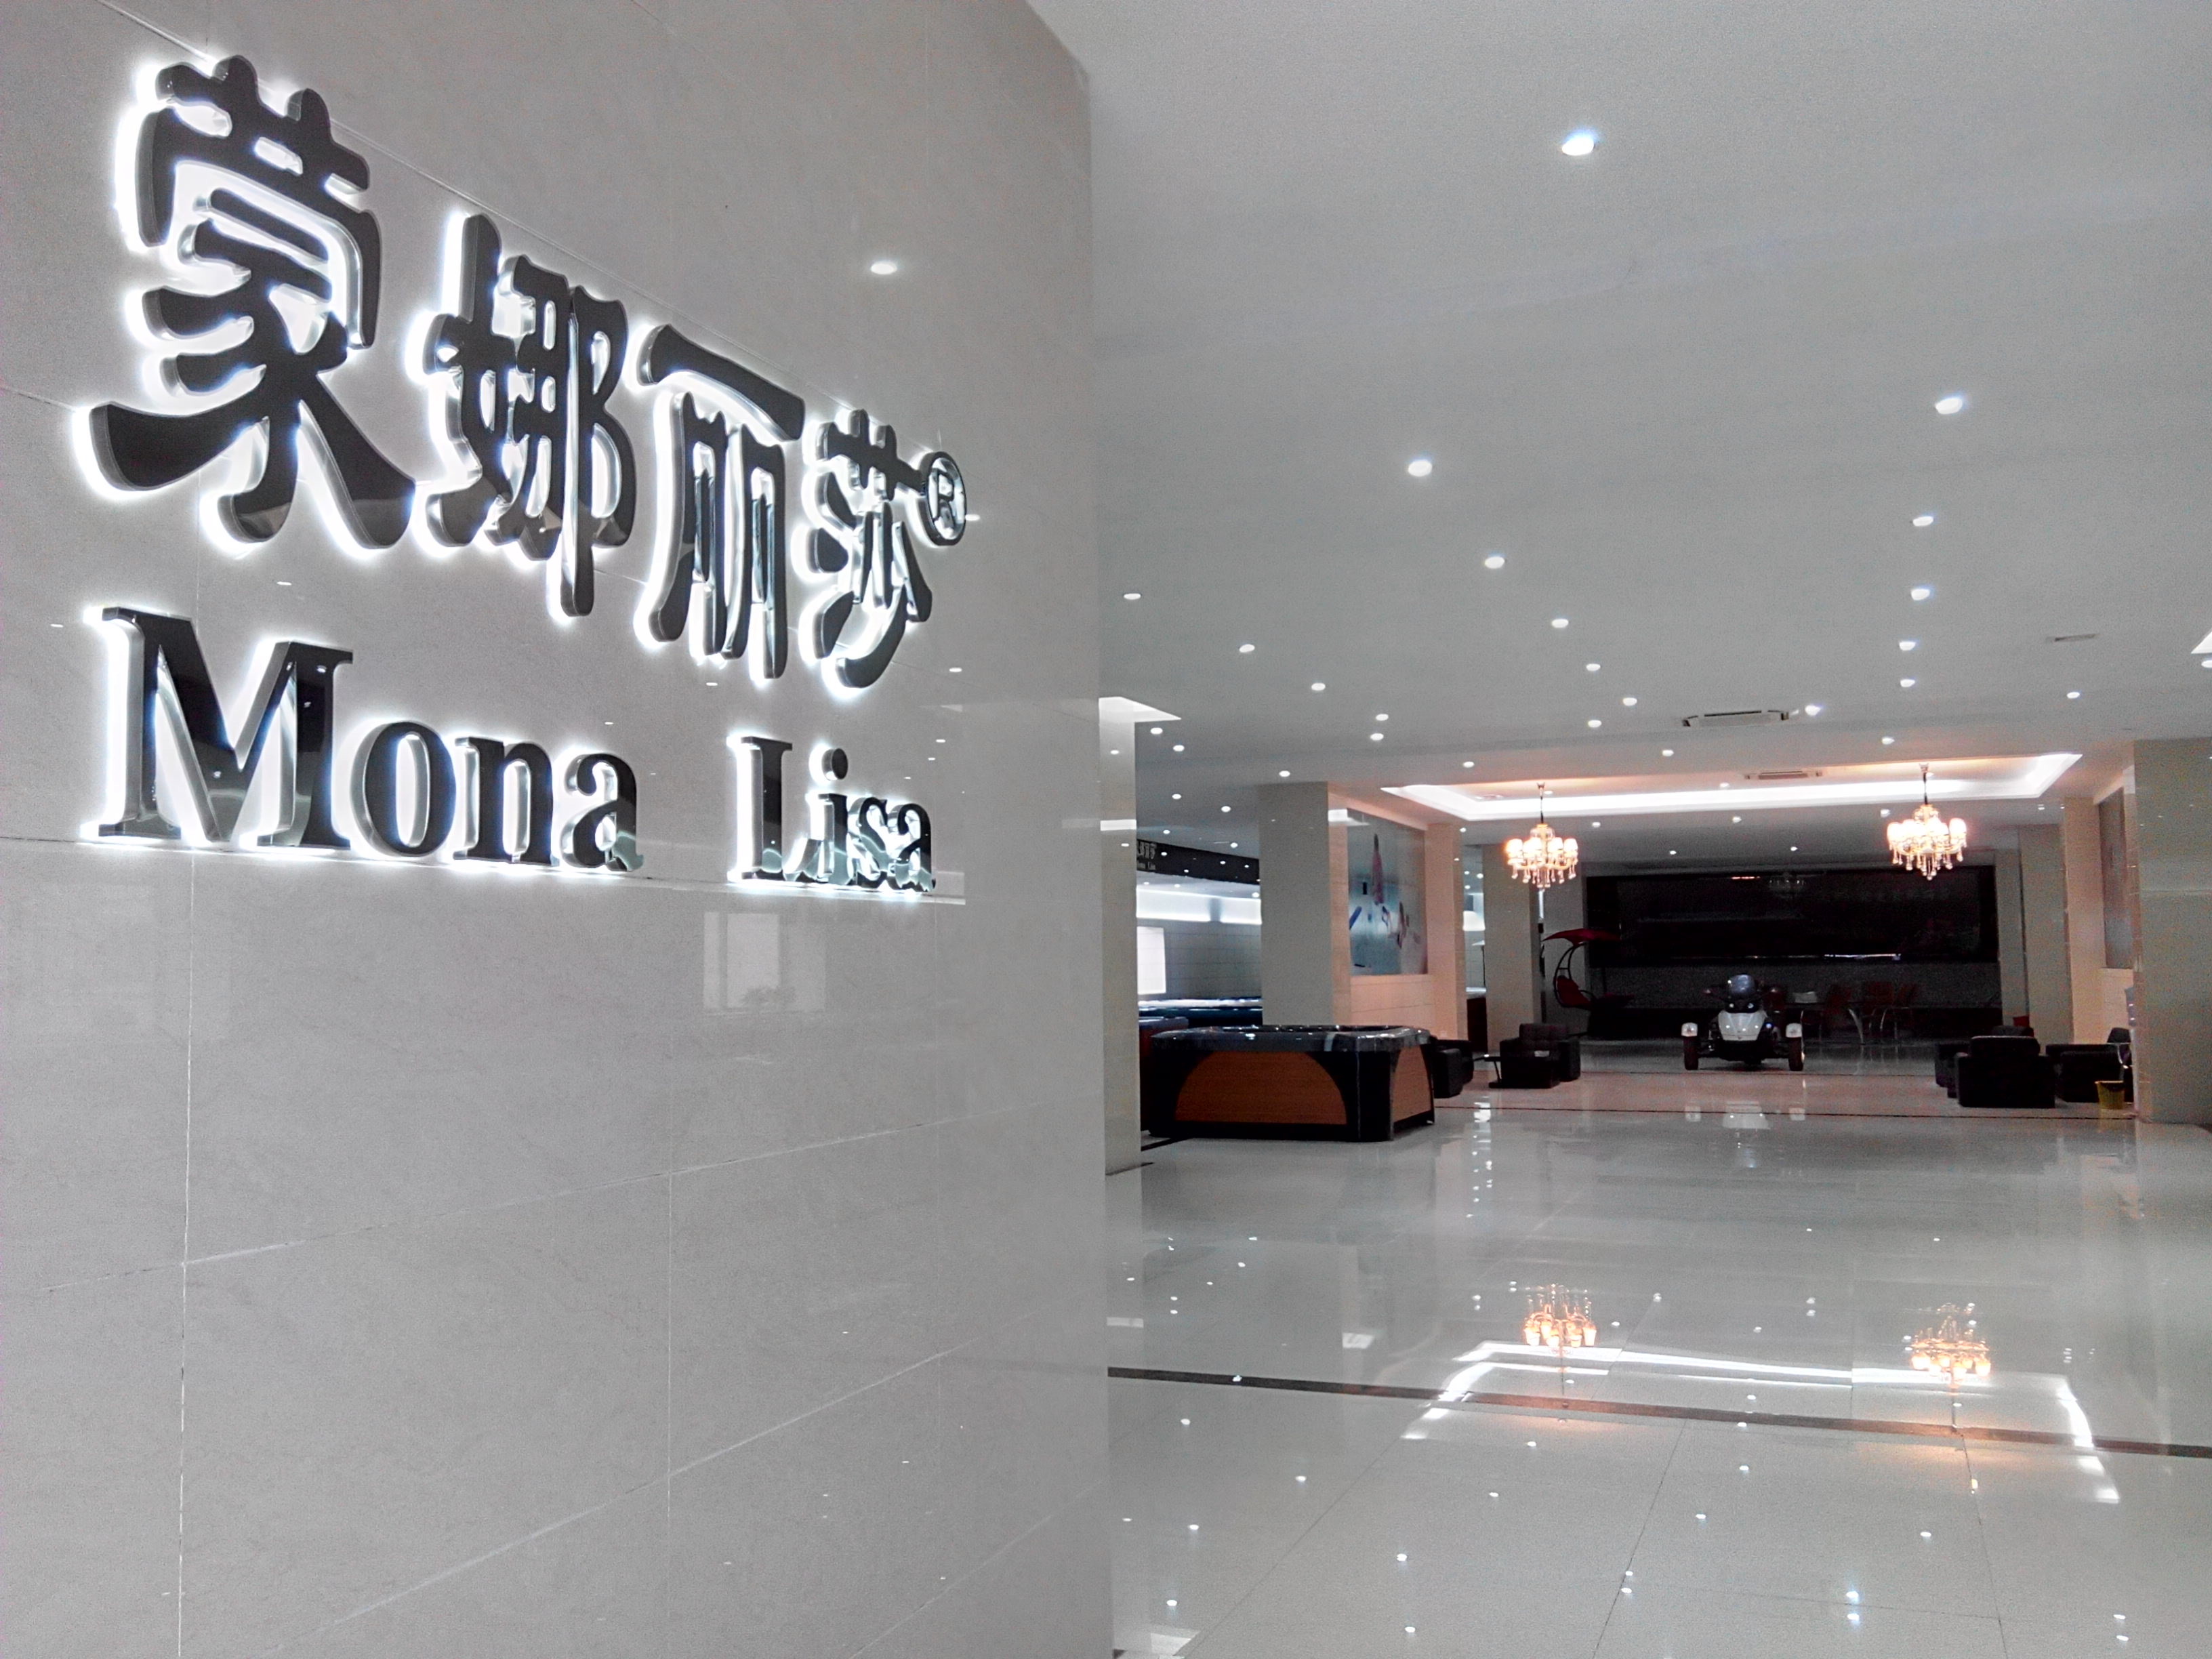 Guangzhou Monalisa Bath Ware Co., Ltd